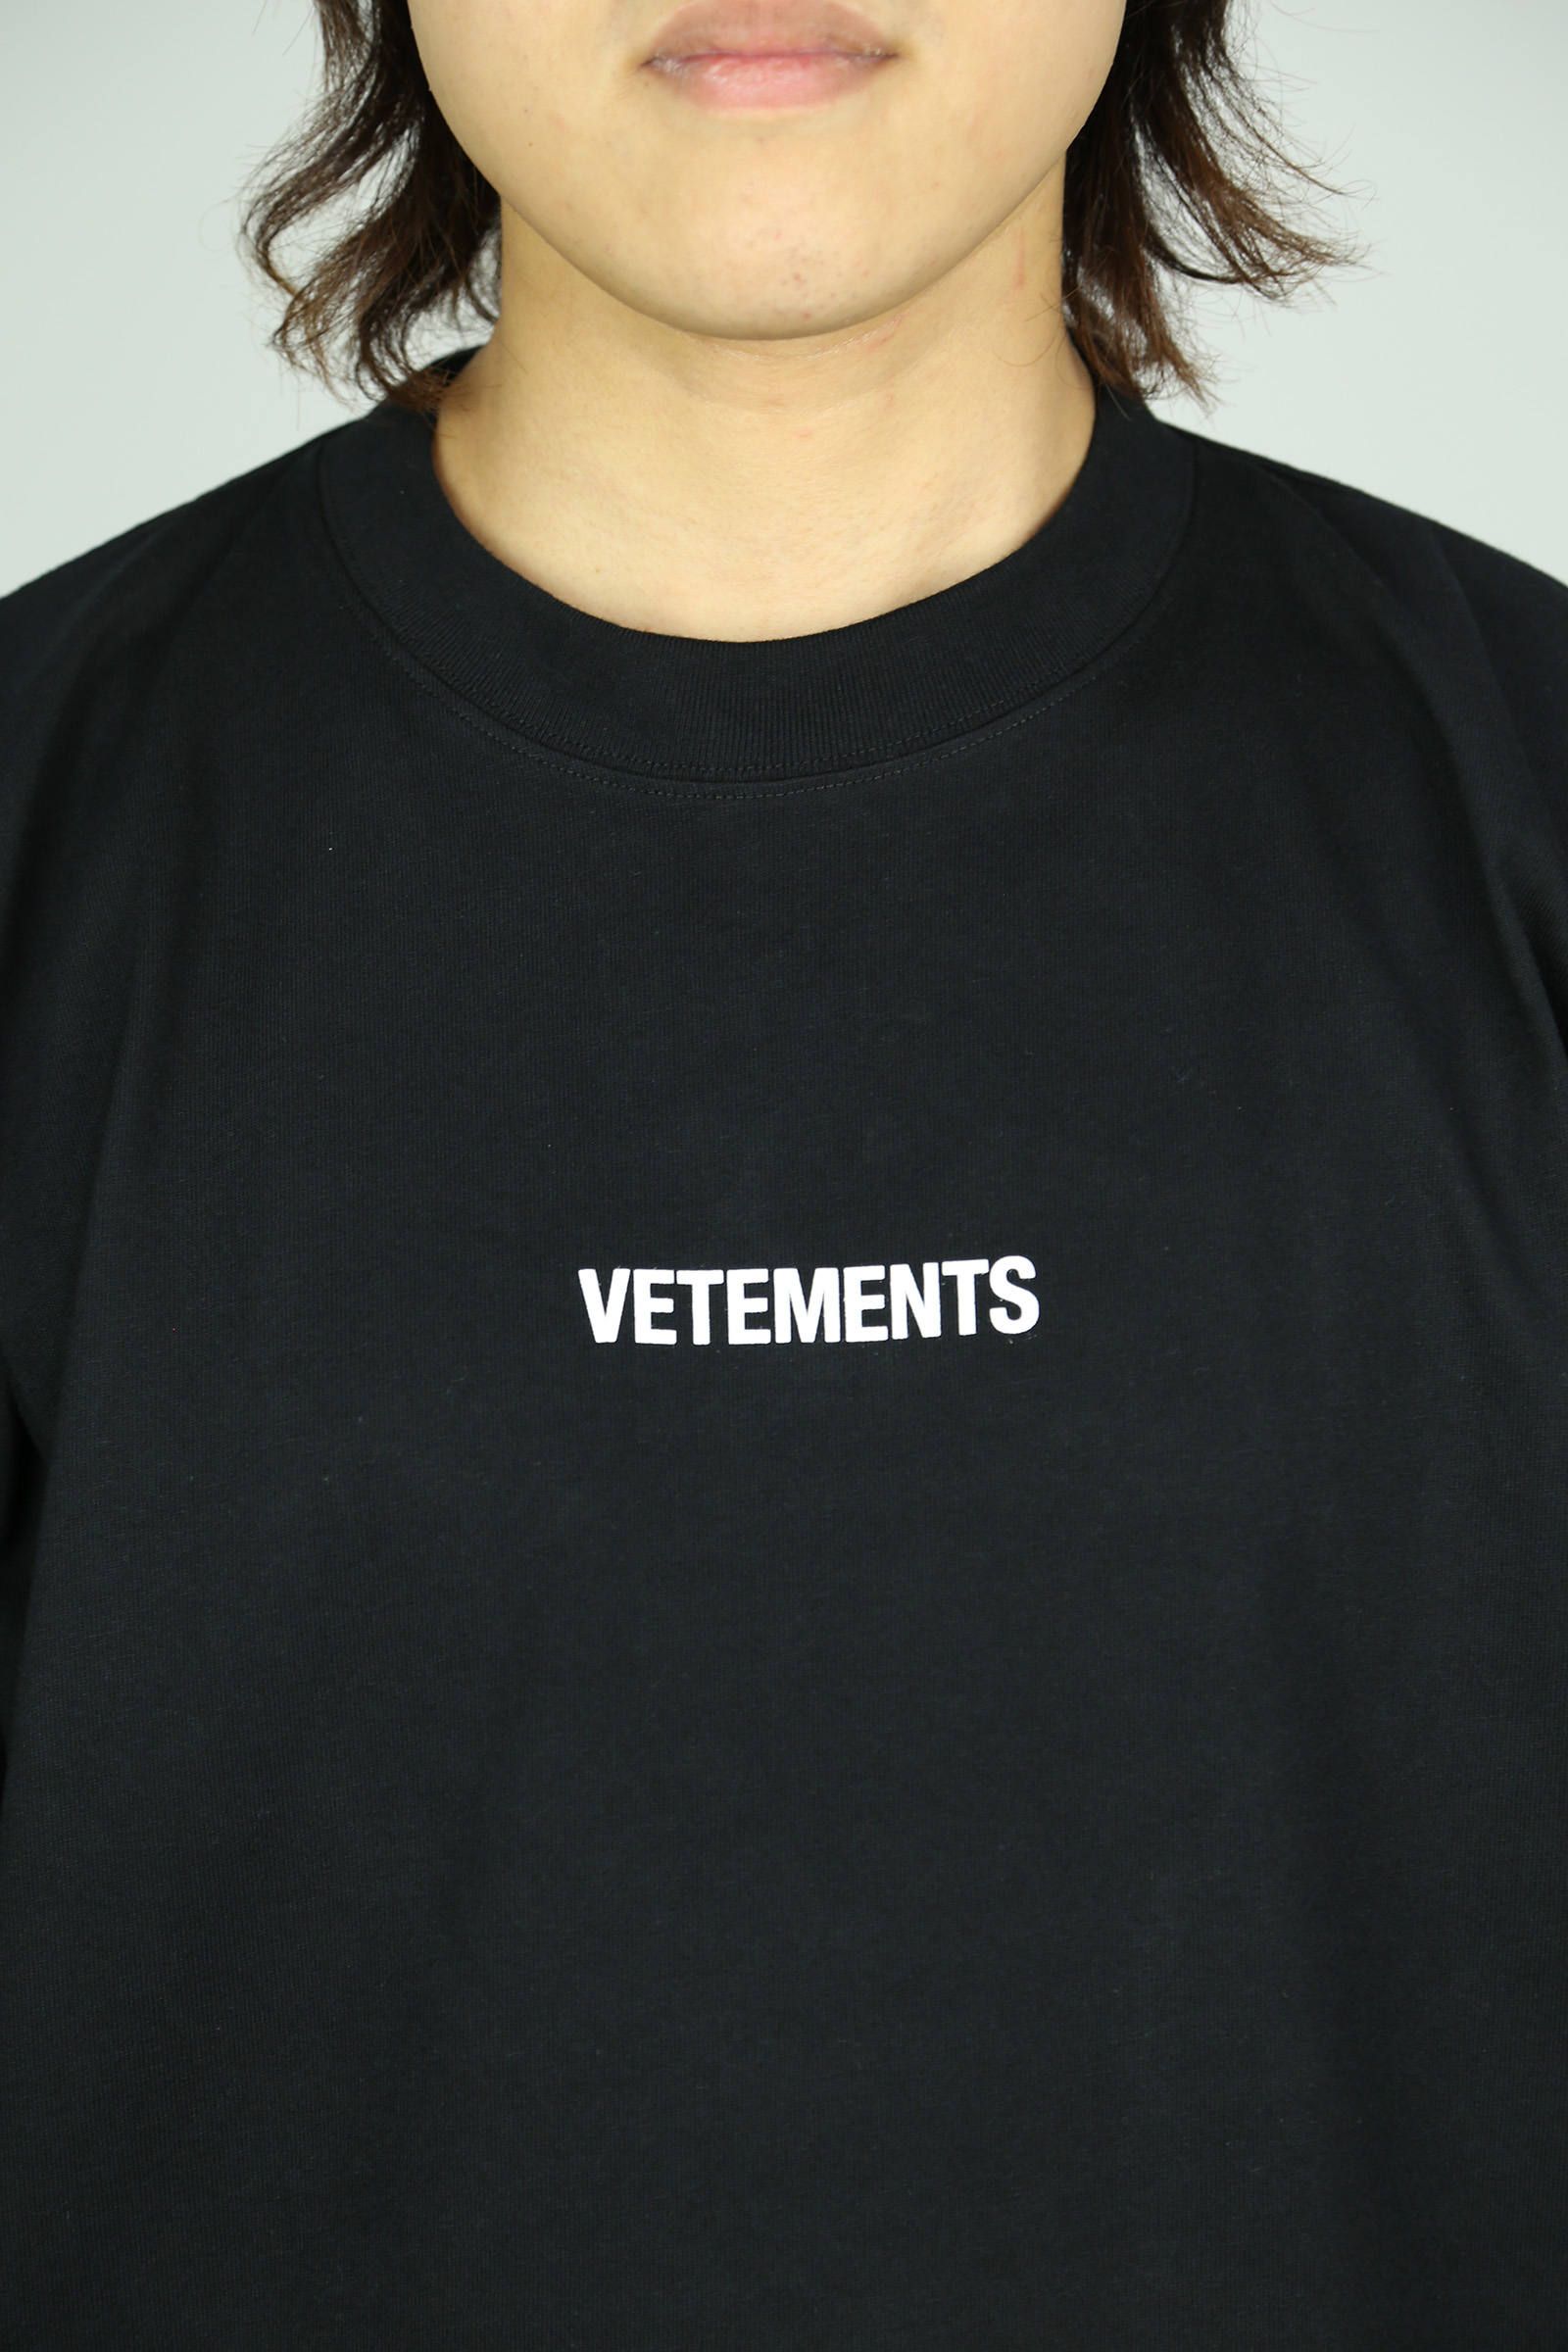 新品 Vetements LABEL LOGO Tシャツ ユニセックス - rehda.com